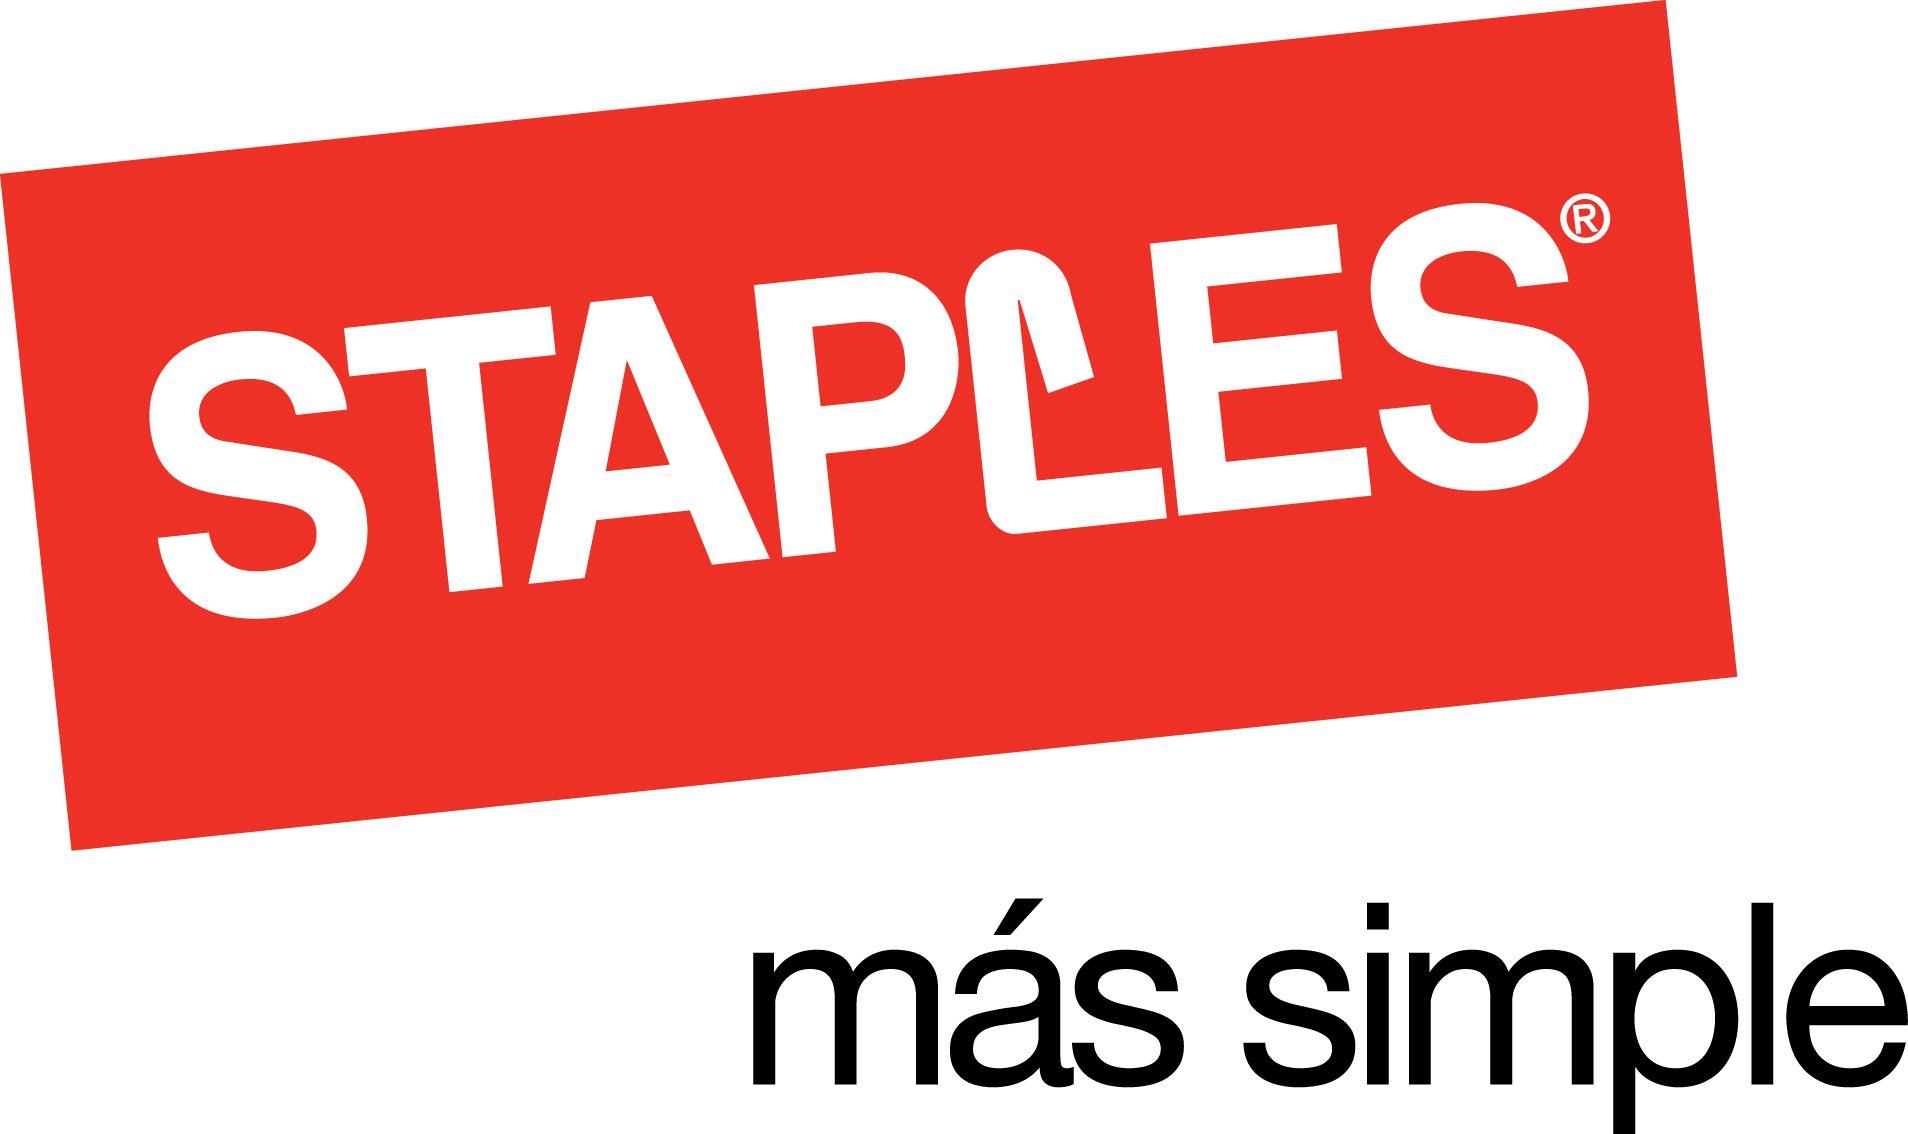 Staples Logo - File:Logo Staples.jpg - Wikimedia Commons